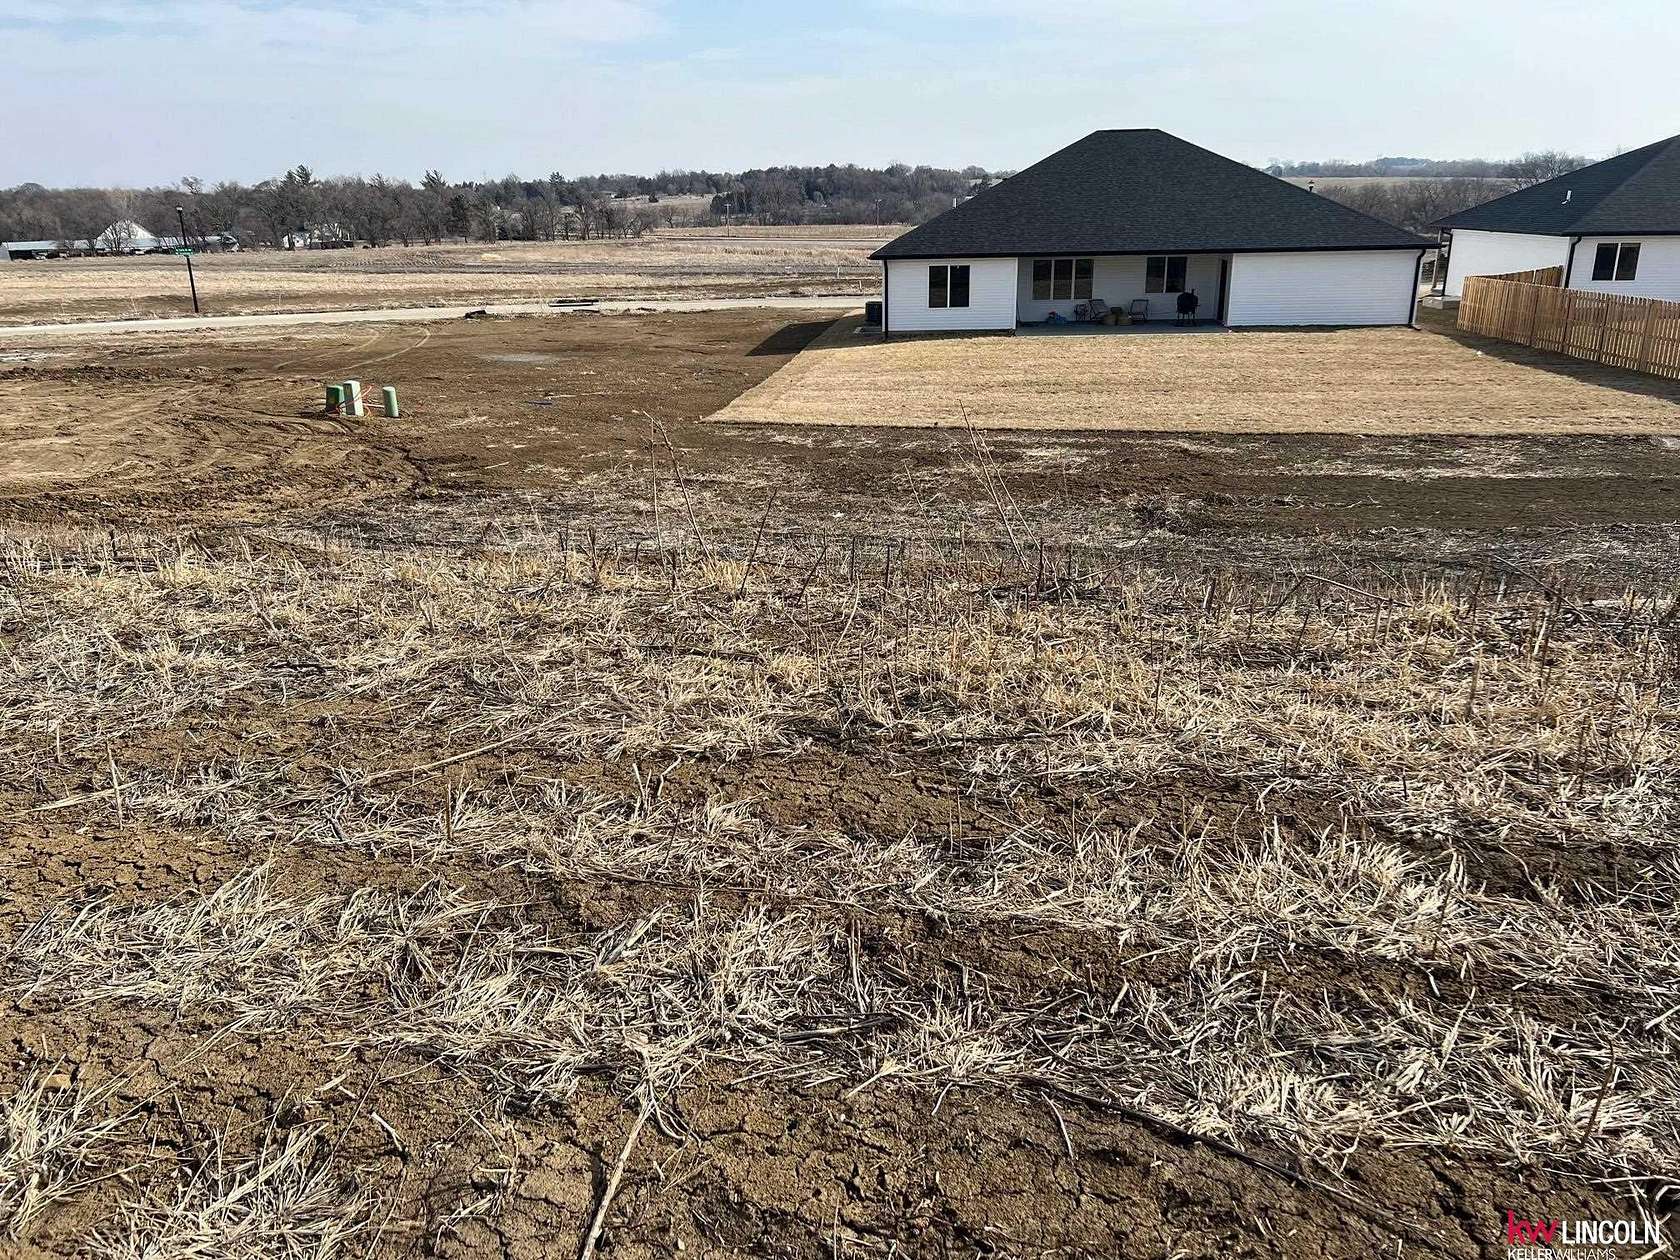 0.22 Acres of Residential Land for Sale in Lincoln, Nebraska